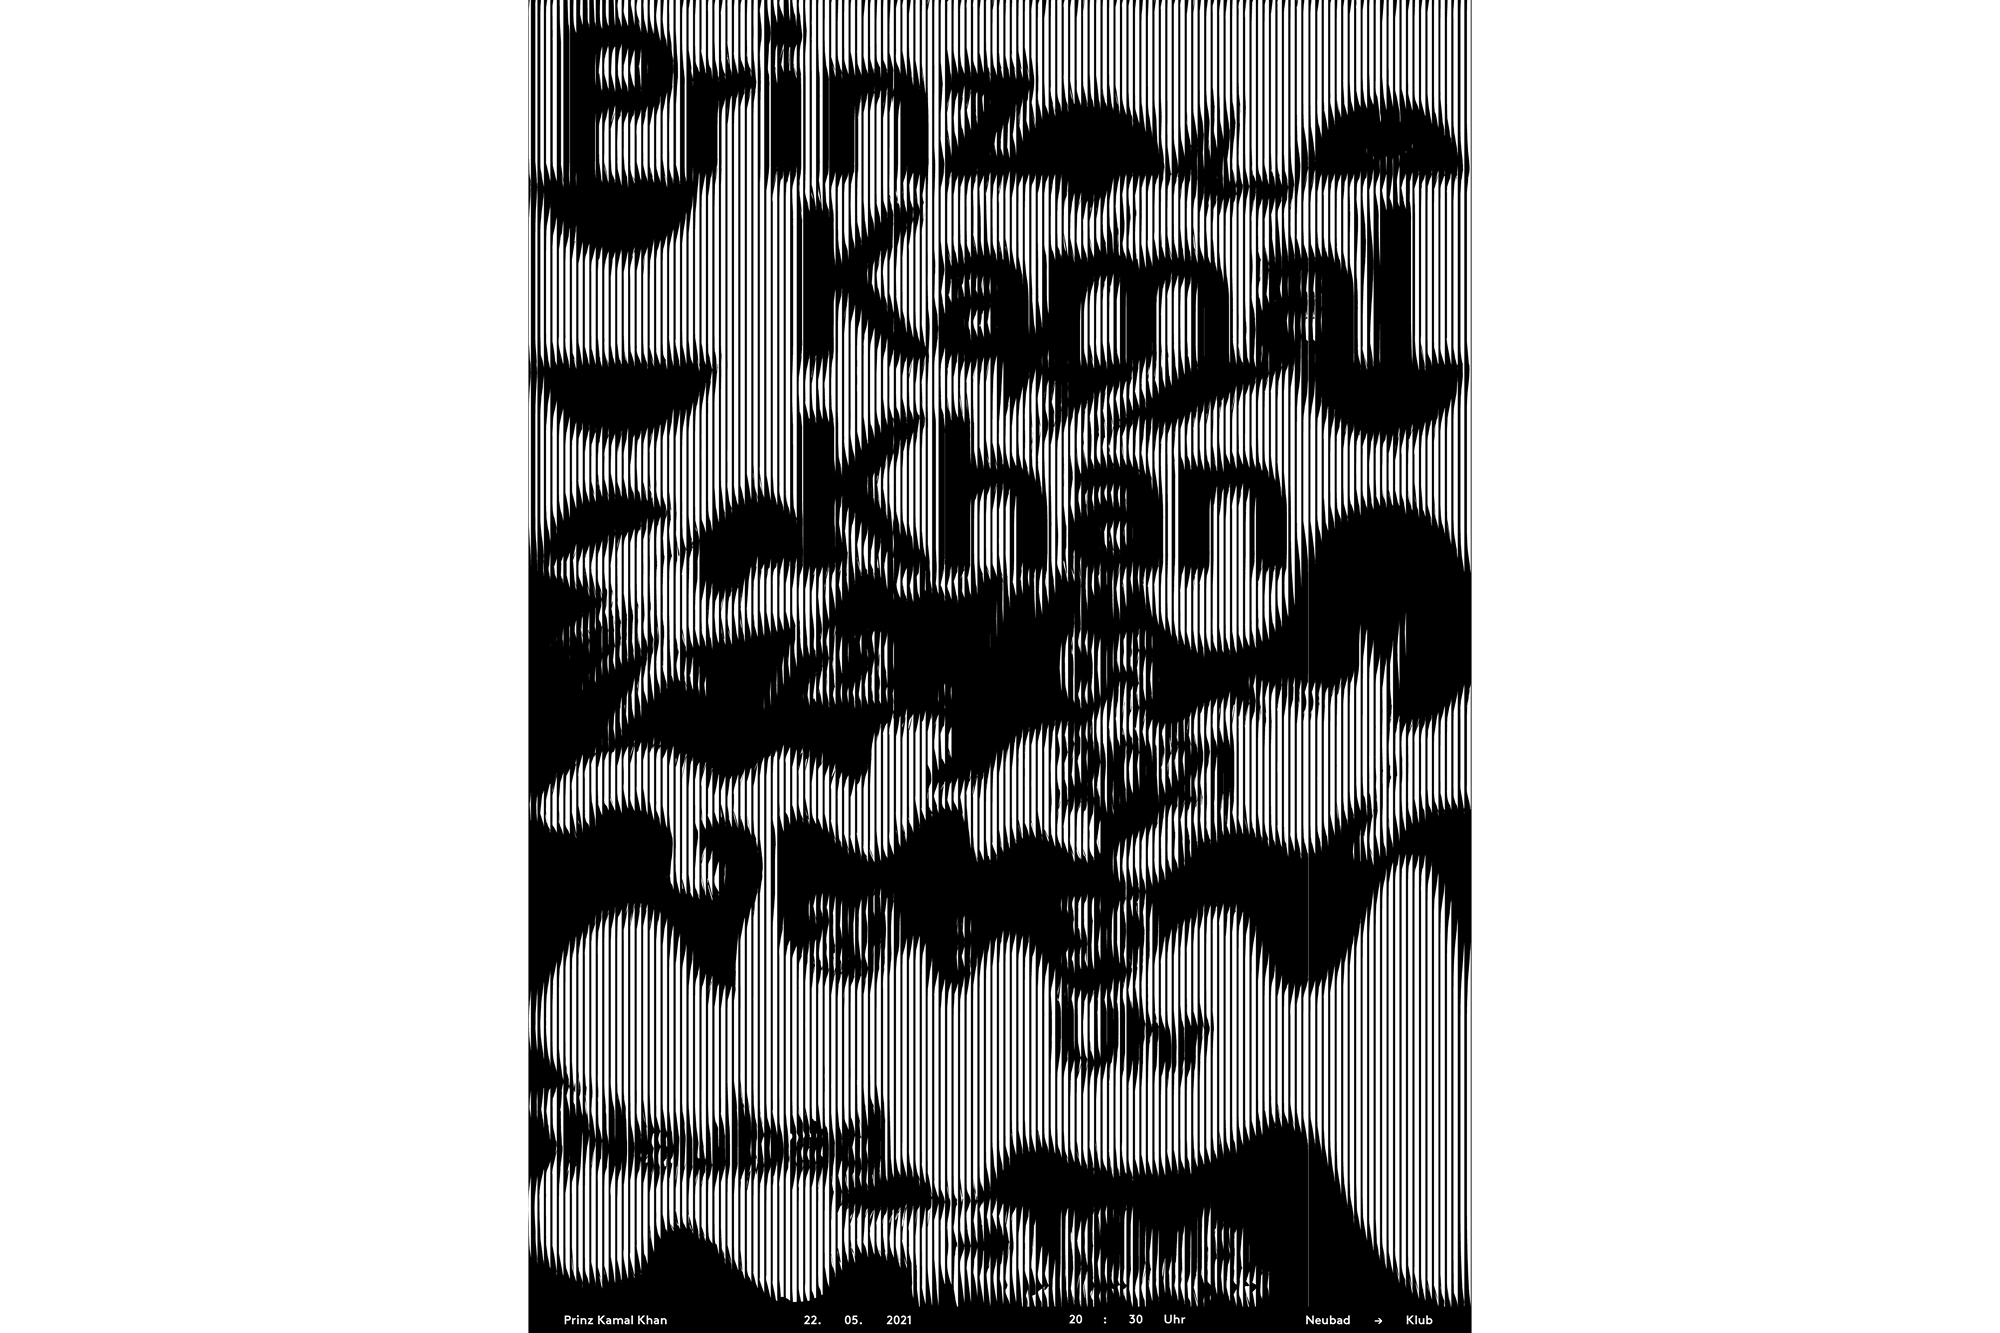 Veranstaltungsplakat zu Prinz Kamal Khan von Benjamin Kunz